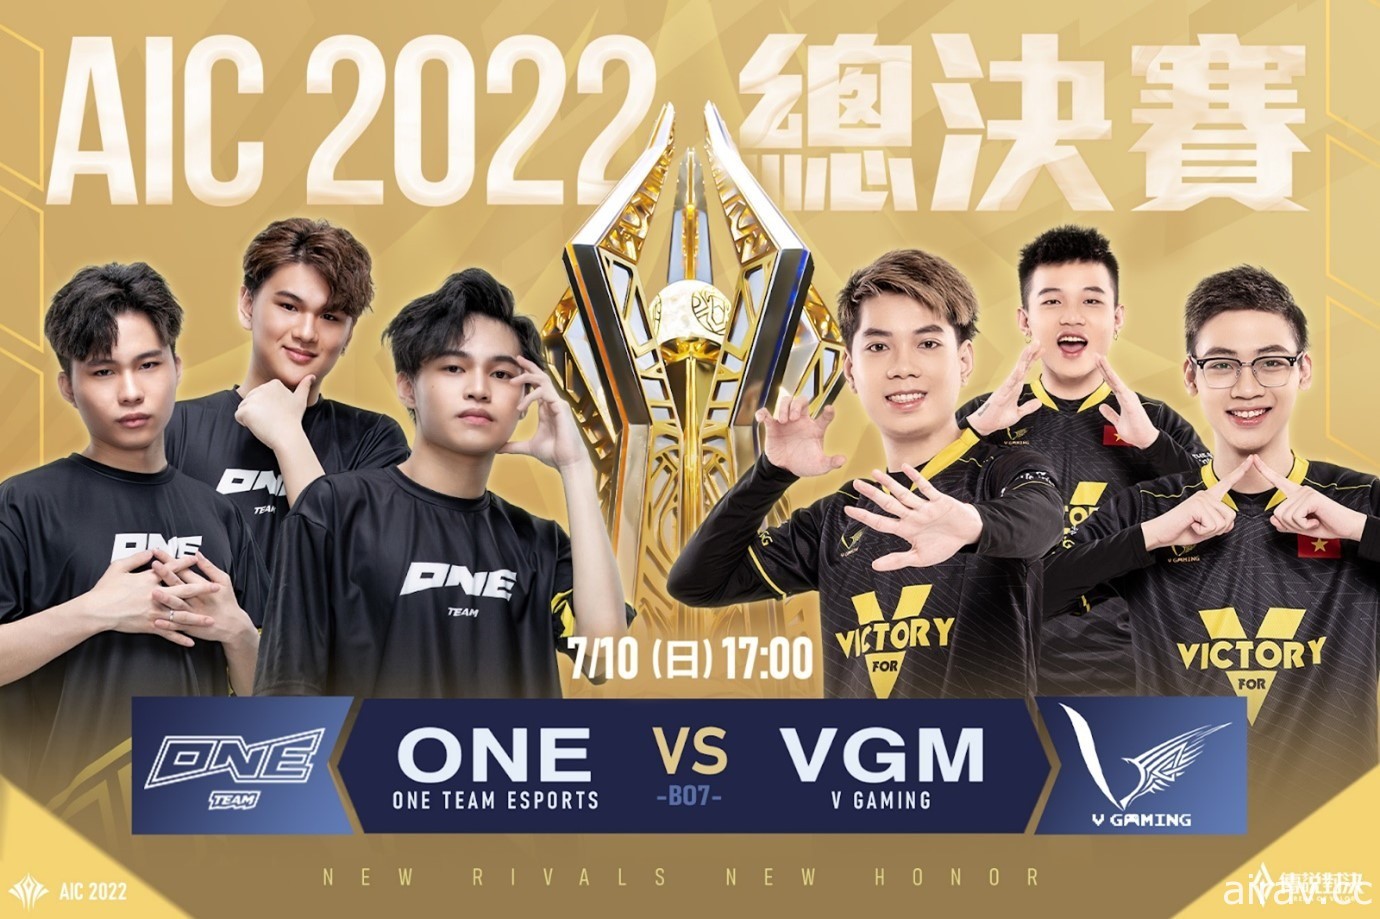 《傳說對決》AIC 2022 冠軍賽將於 7 月 10 日開戰 由 ONE 對決 VGM 戰隊